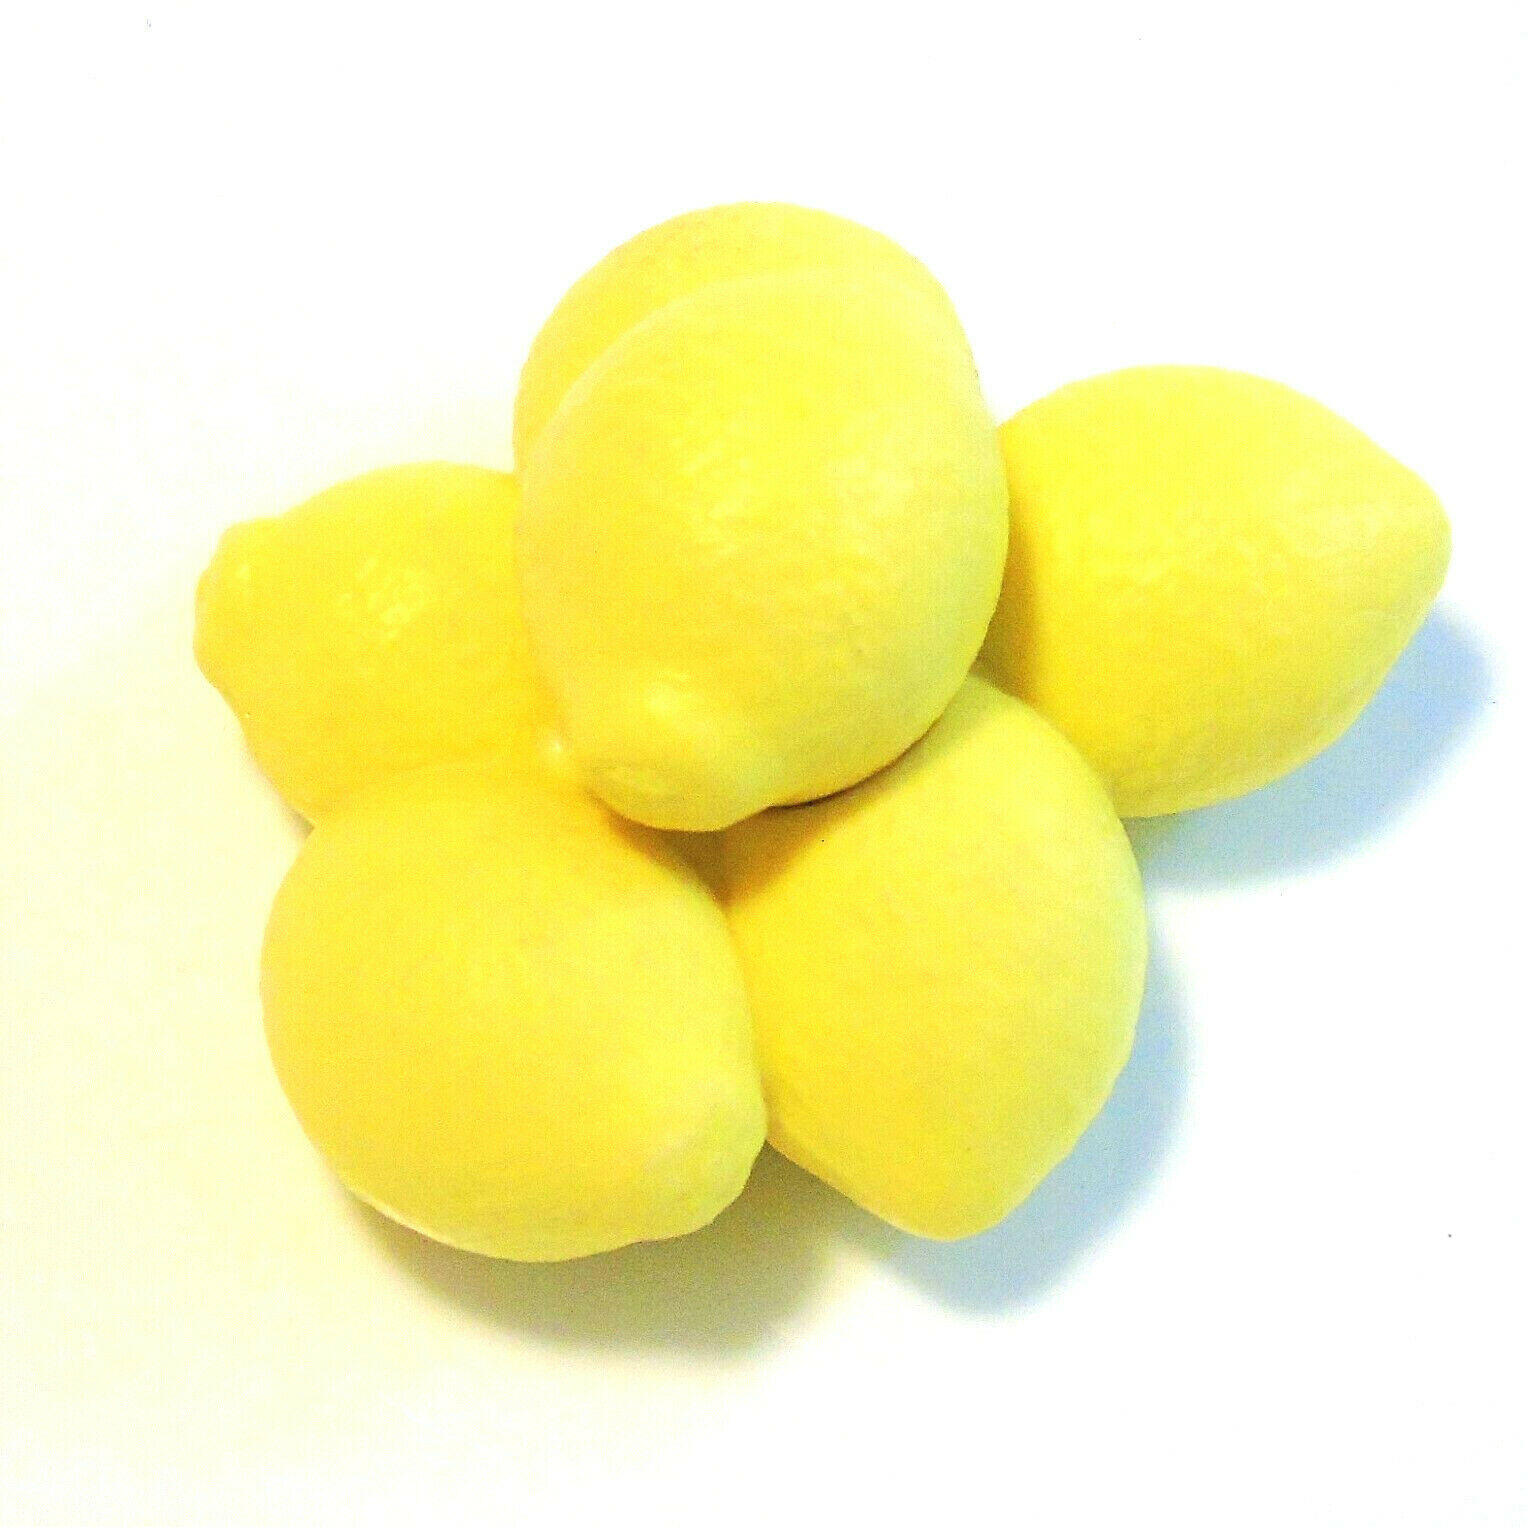 American Girl Kitchen Island Lemons 3" Bunch Of 6 Lemons For Bowl / Refrigerator